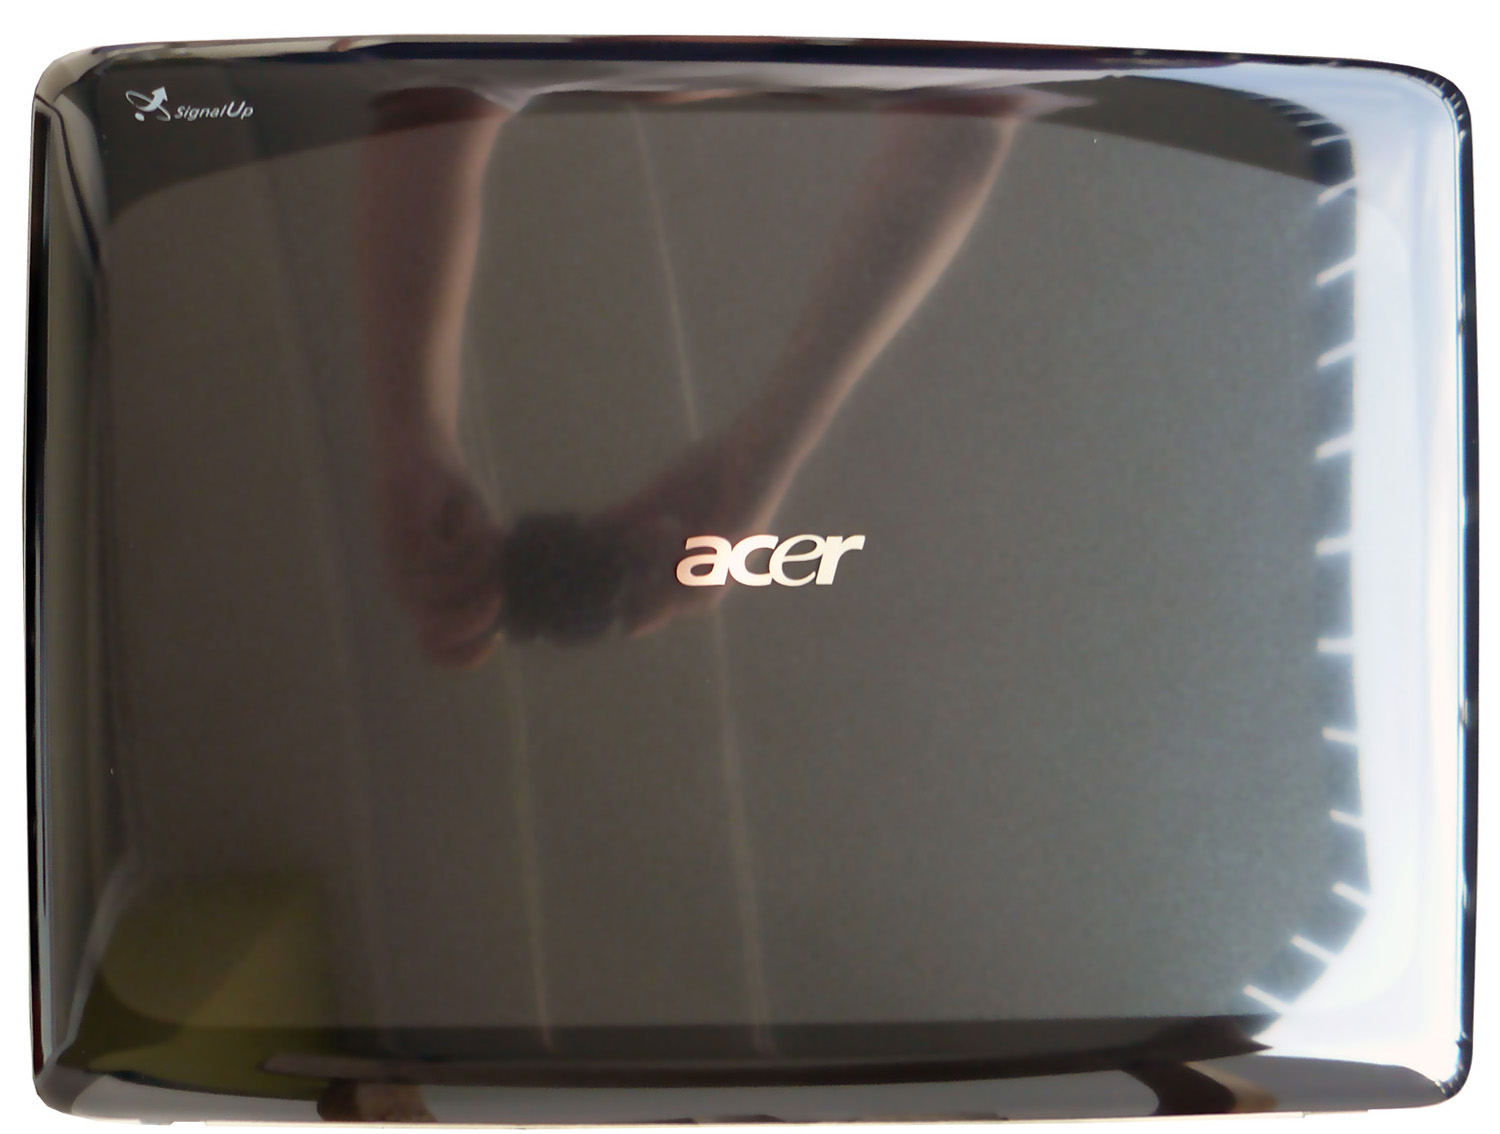 Acer Aspire 7720G - mobilní Penryn v testu